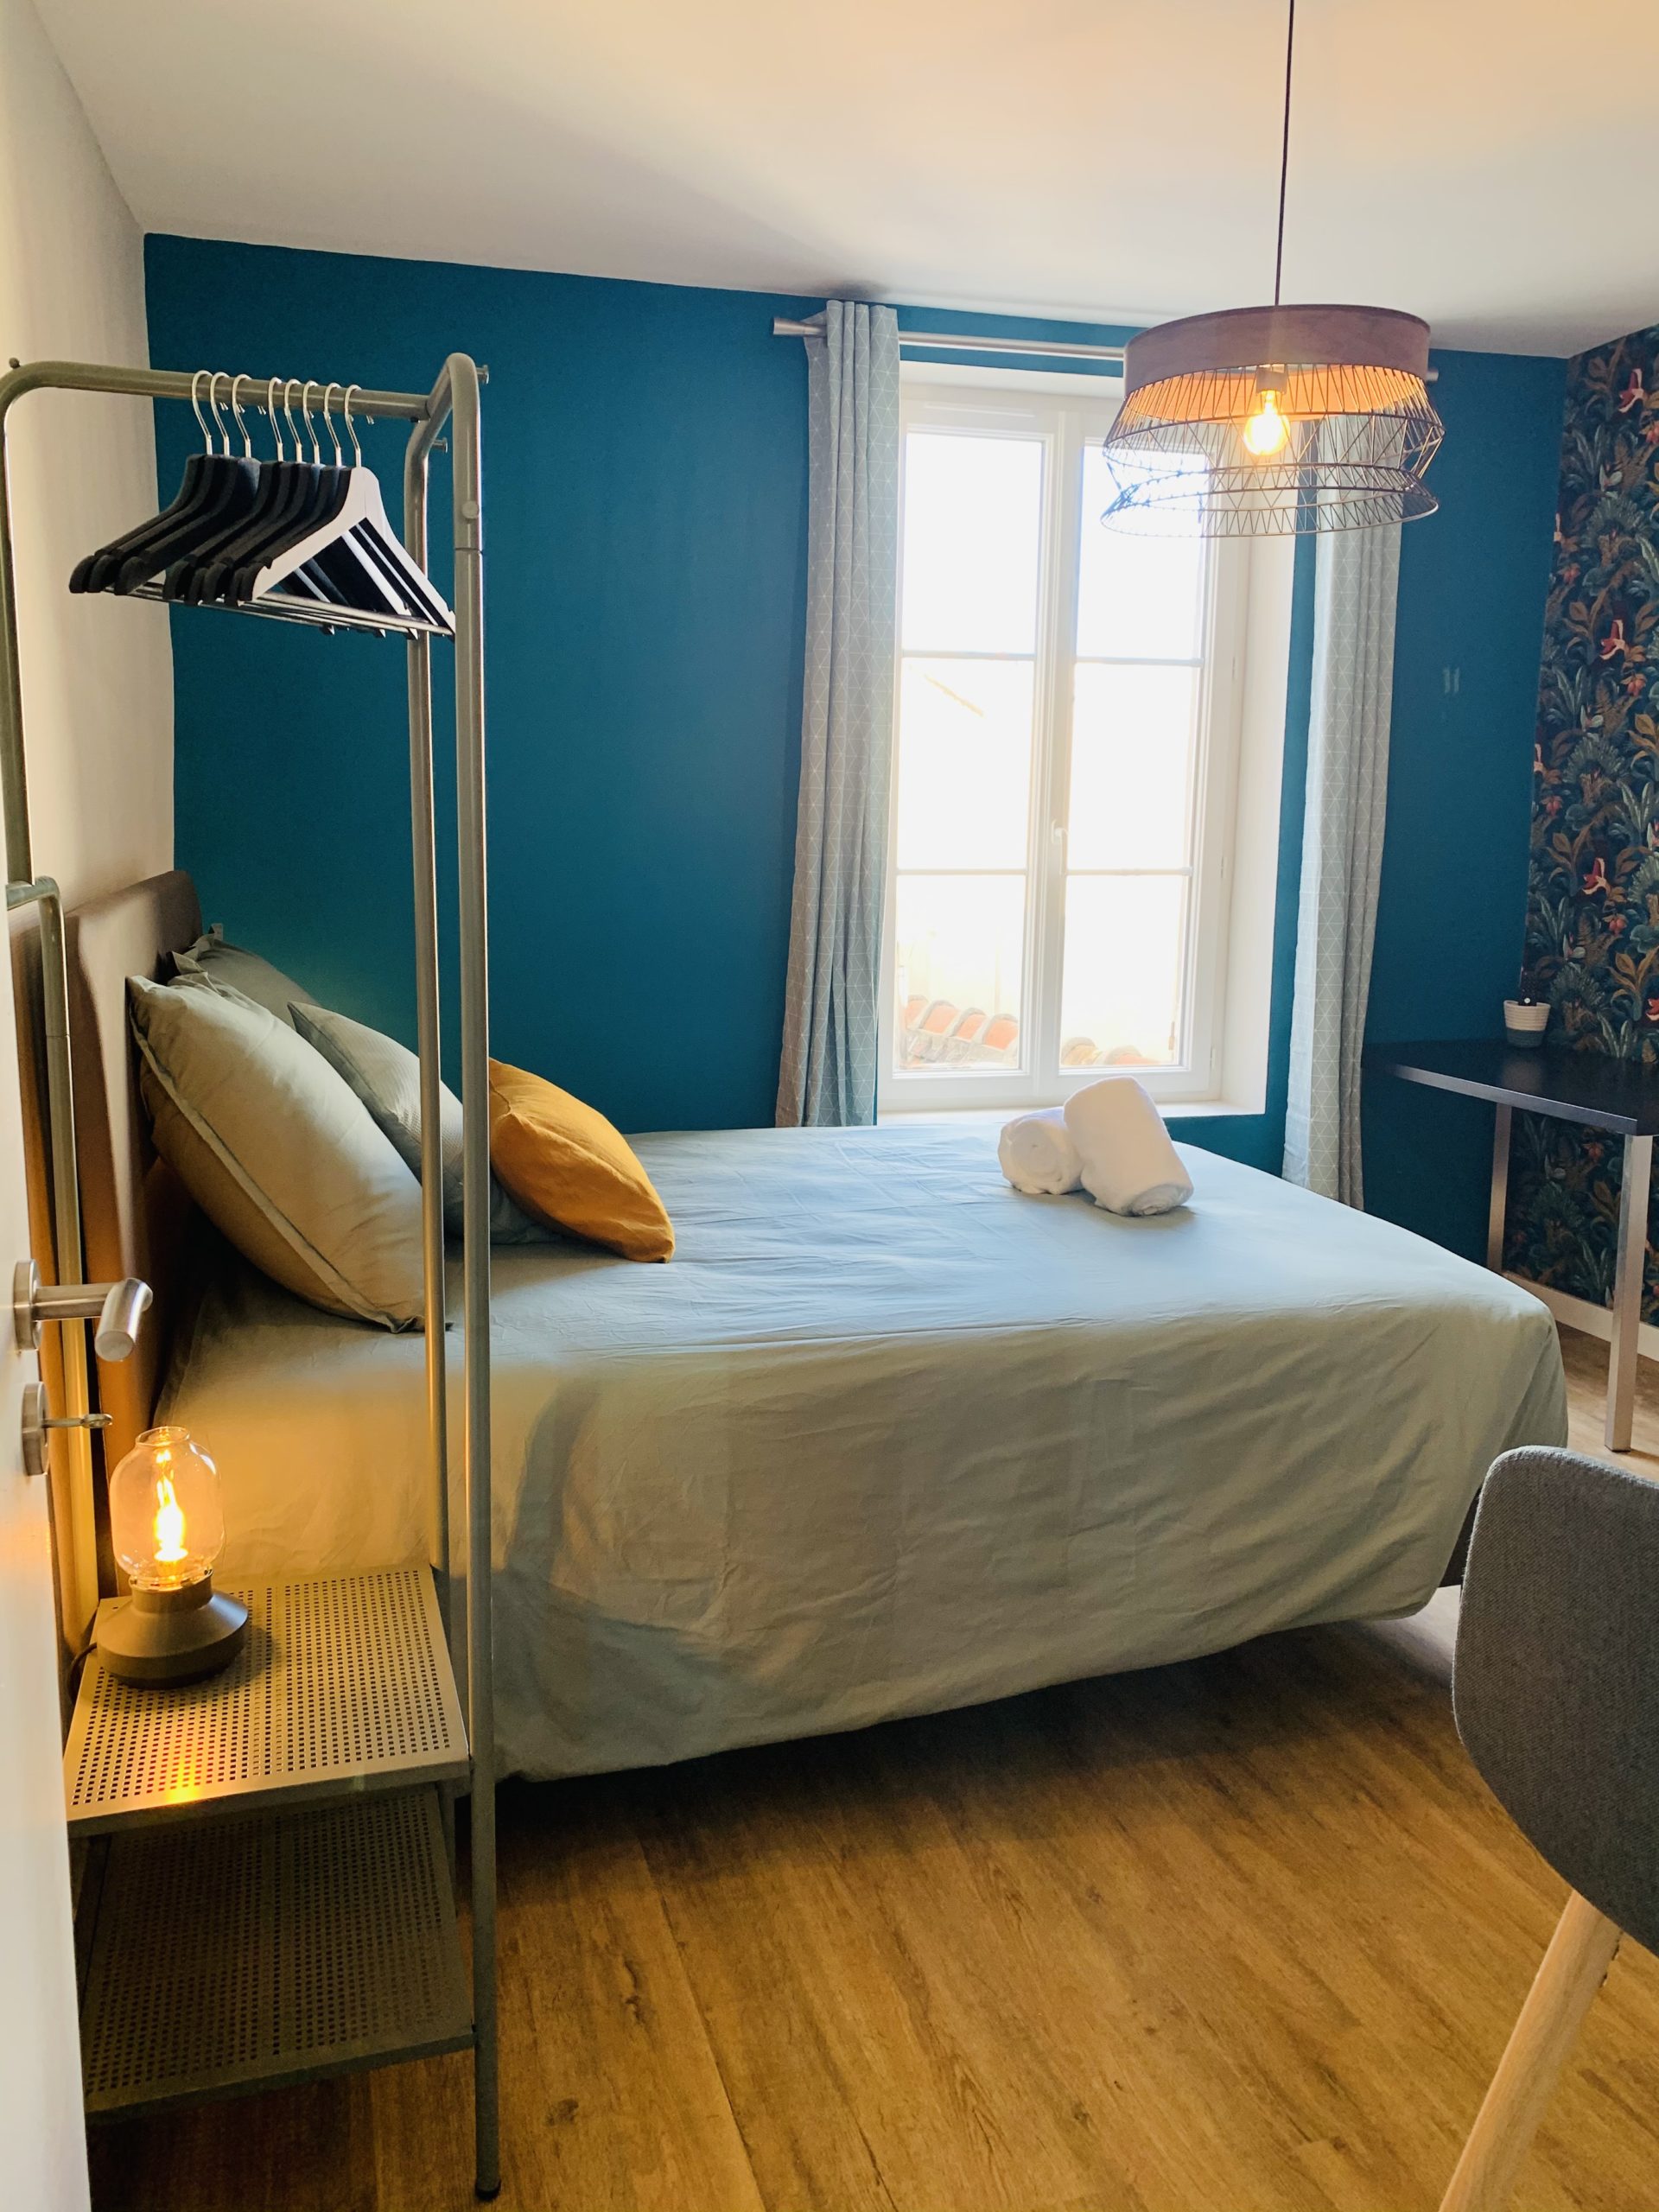 conciergerie airbnb orléans good loc appartement maison rentabiliser biens immobilier locatif